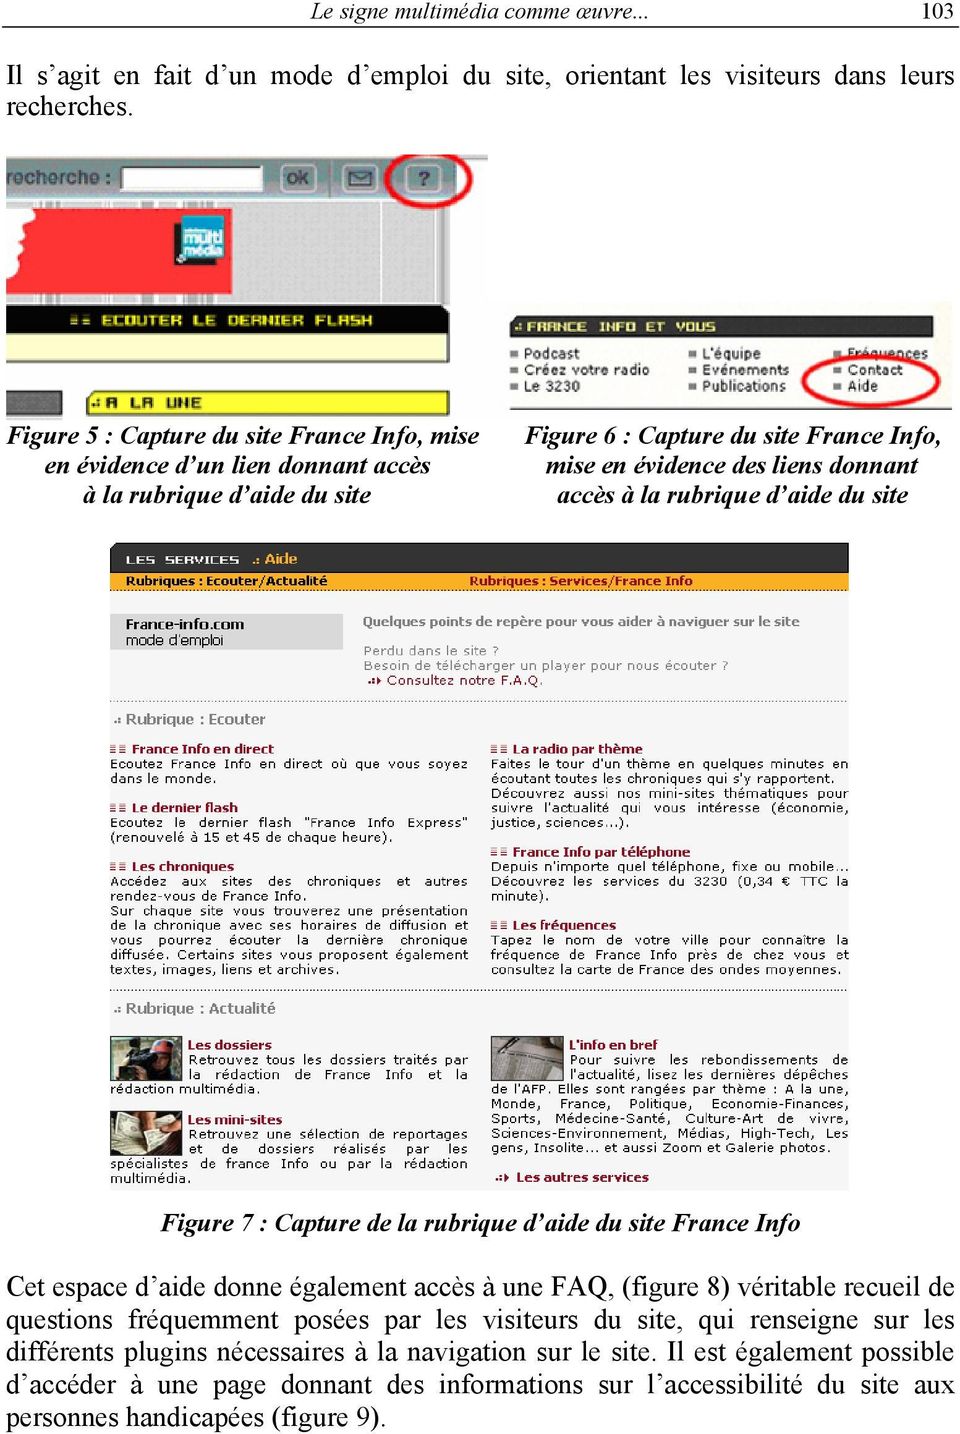 la rubrique d aide du site Figure 7 : Capture de la rubrique d aide du site France Info Cet espace d aide donne également accès à une FAQ, (figure 8) véritable recueil de questions fréquemment